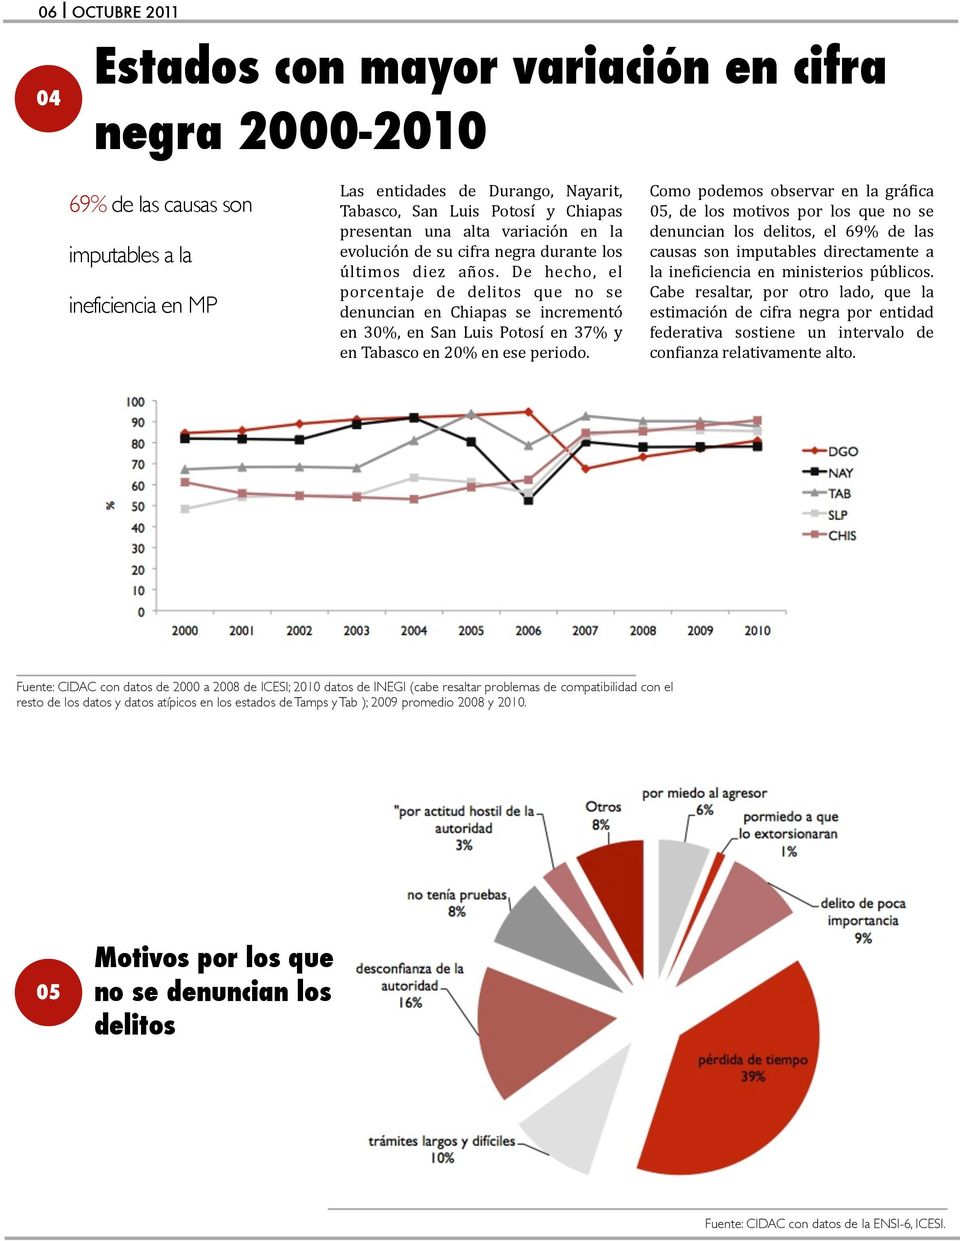 De hecho, el porcentaje de delitos que no se denuncian en Chiapas se incrementó en 30%, en San Luis Potosí en 37% y en Tabasco en 20% en ese periodo.